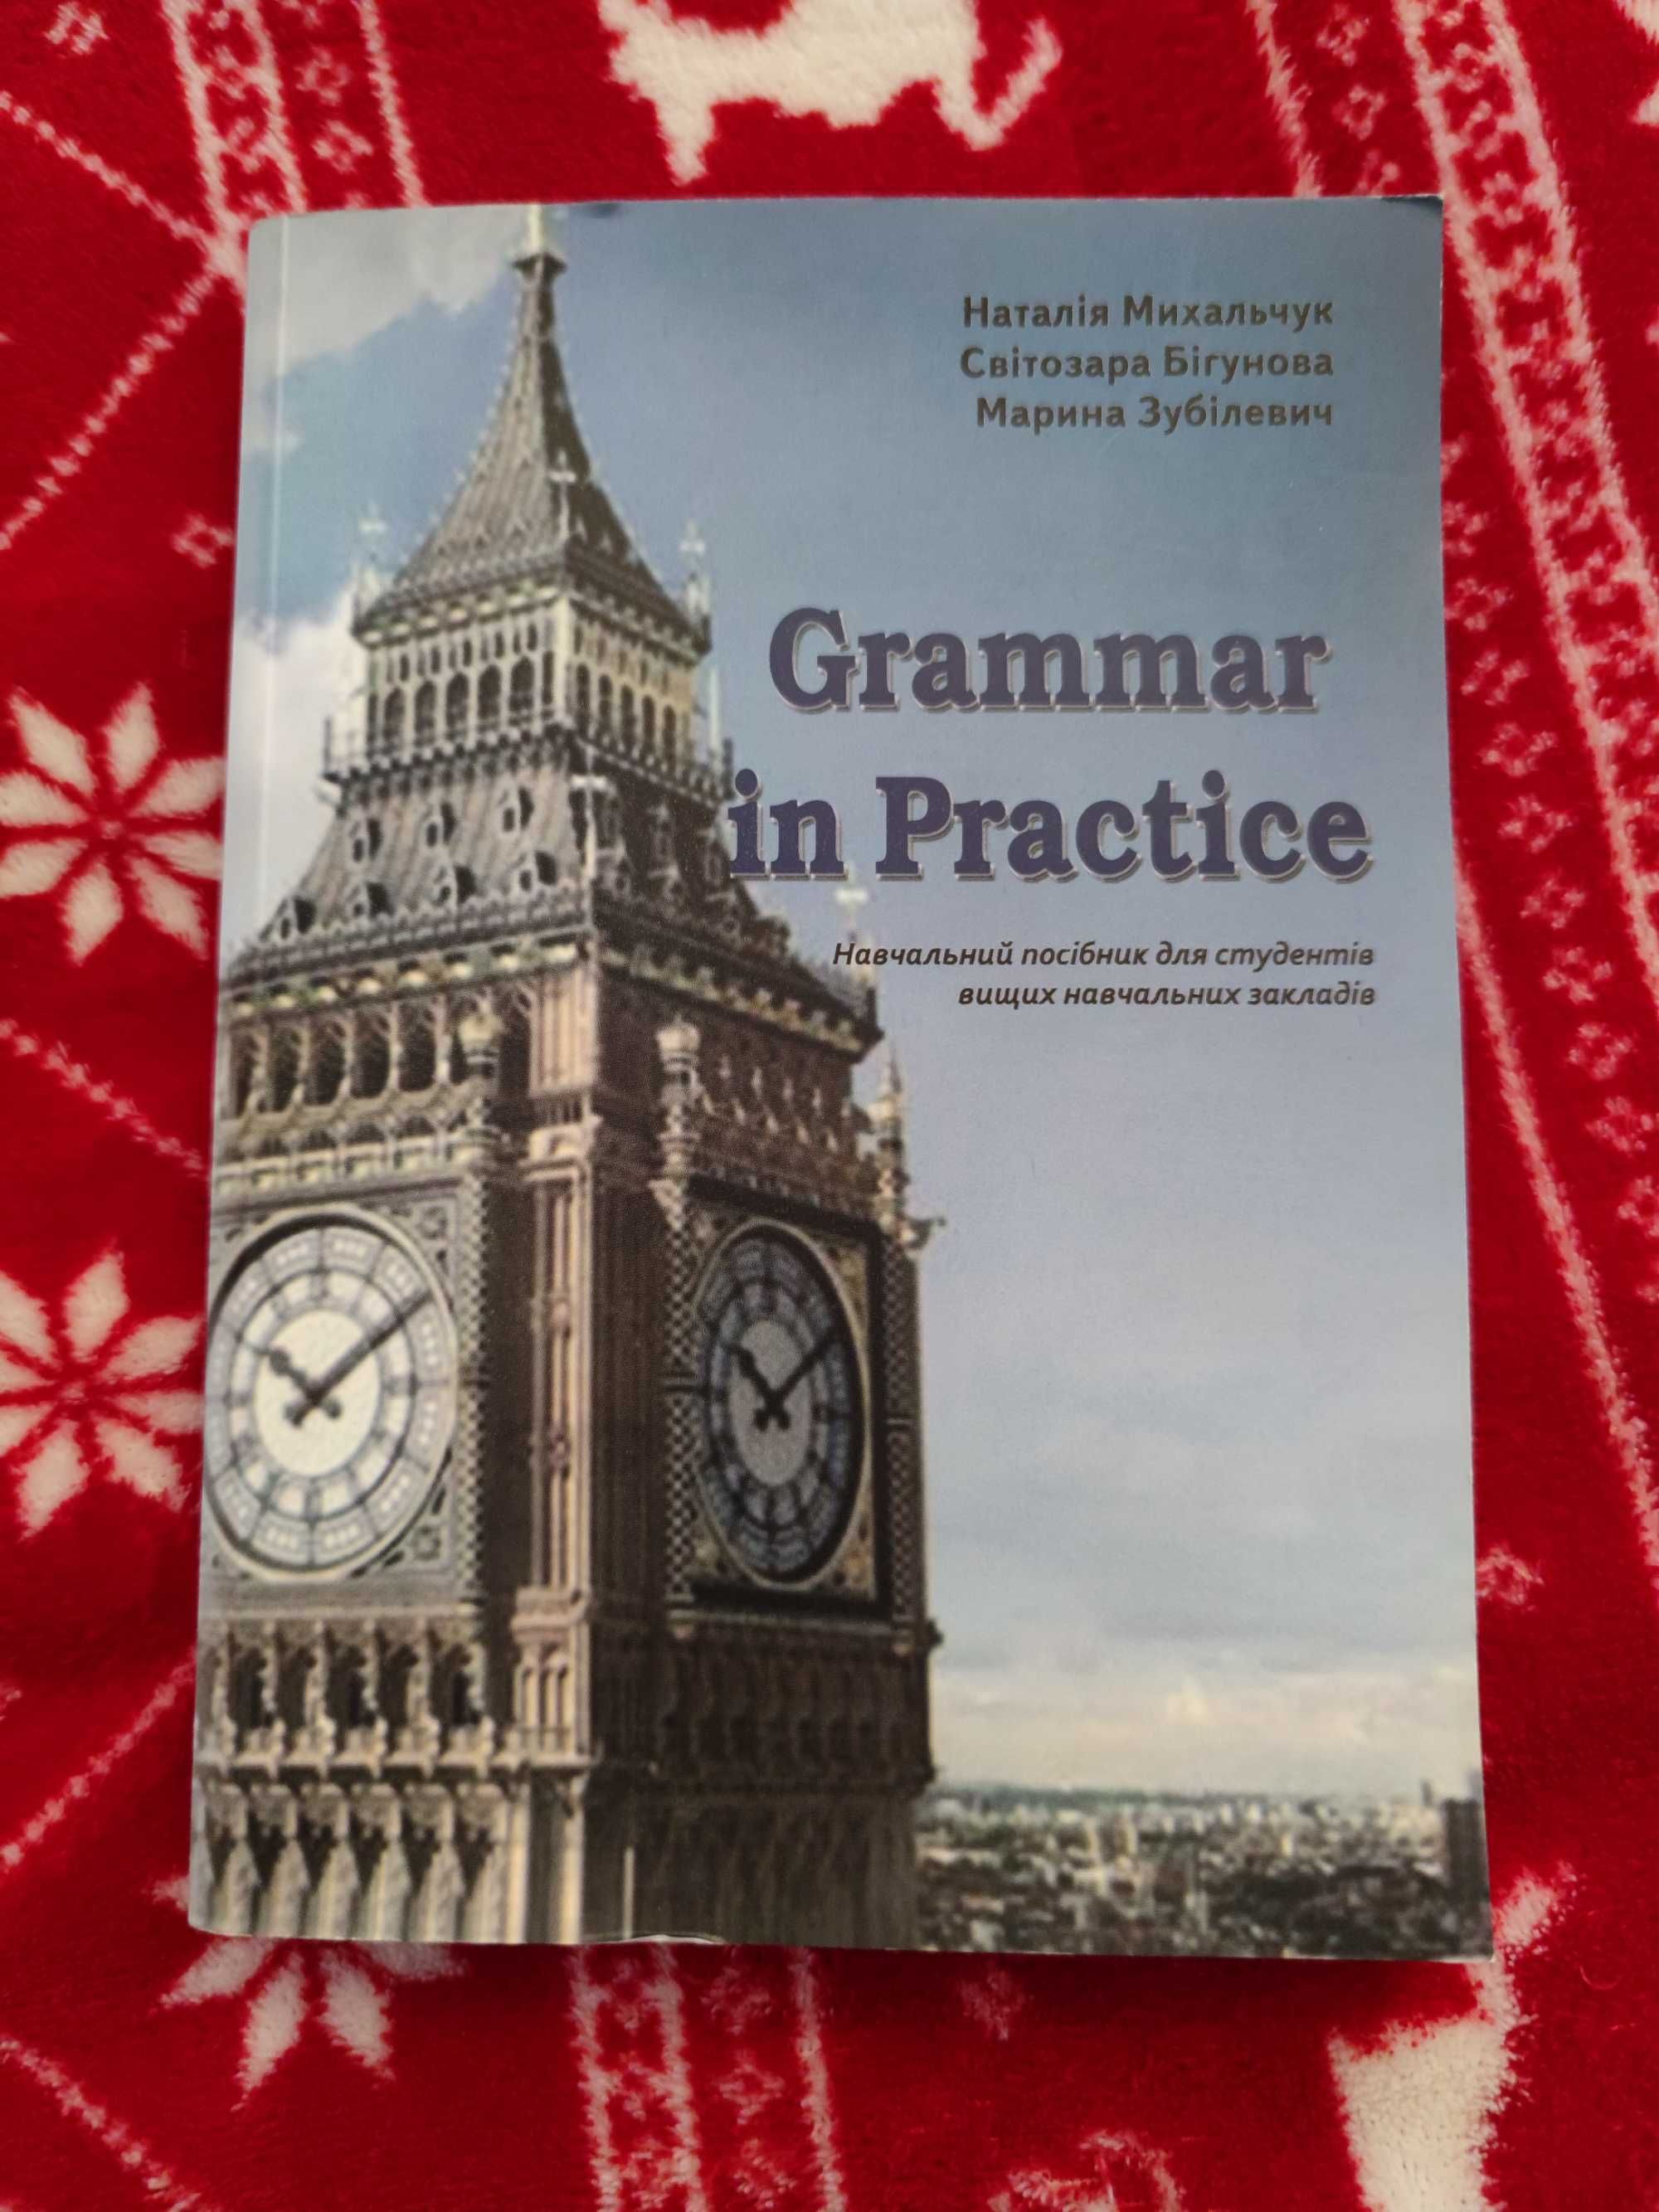 Книга «Практика граматики»